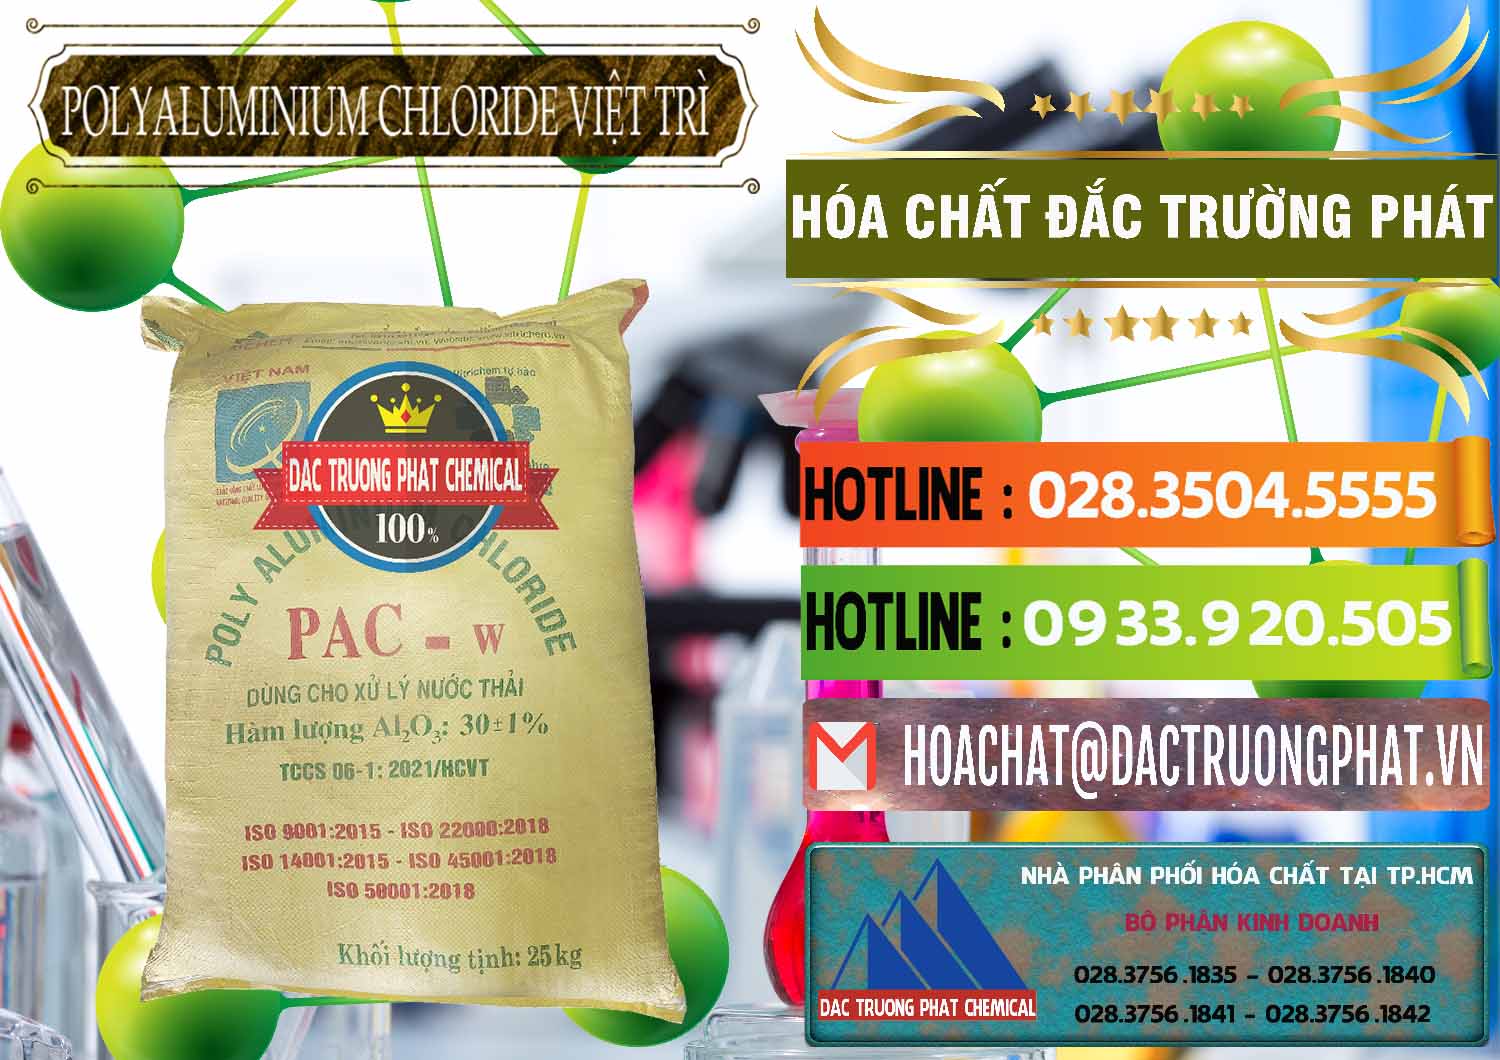 Nơi chuyên bán và phân phối PAC - Polyaluminium Chloride Việt Trì Việt Nam - 0487 - Công ty kinh doanh và bán hóa chất tại TP.HCM - cungcaphoachat.com.vn